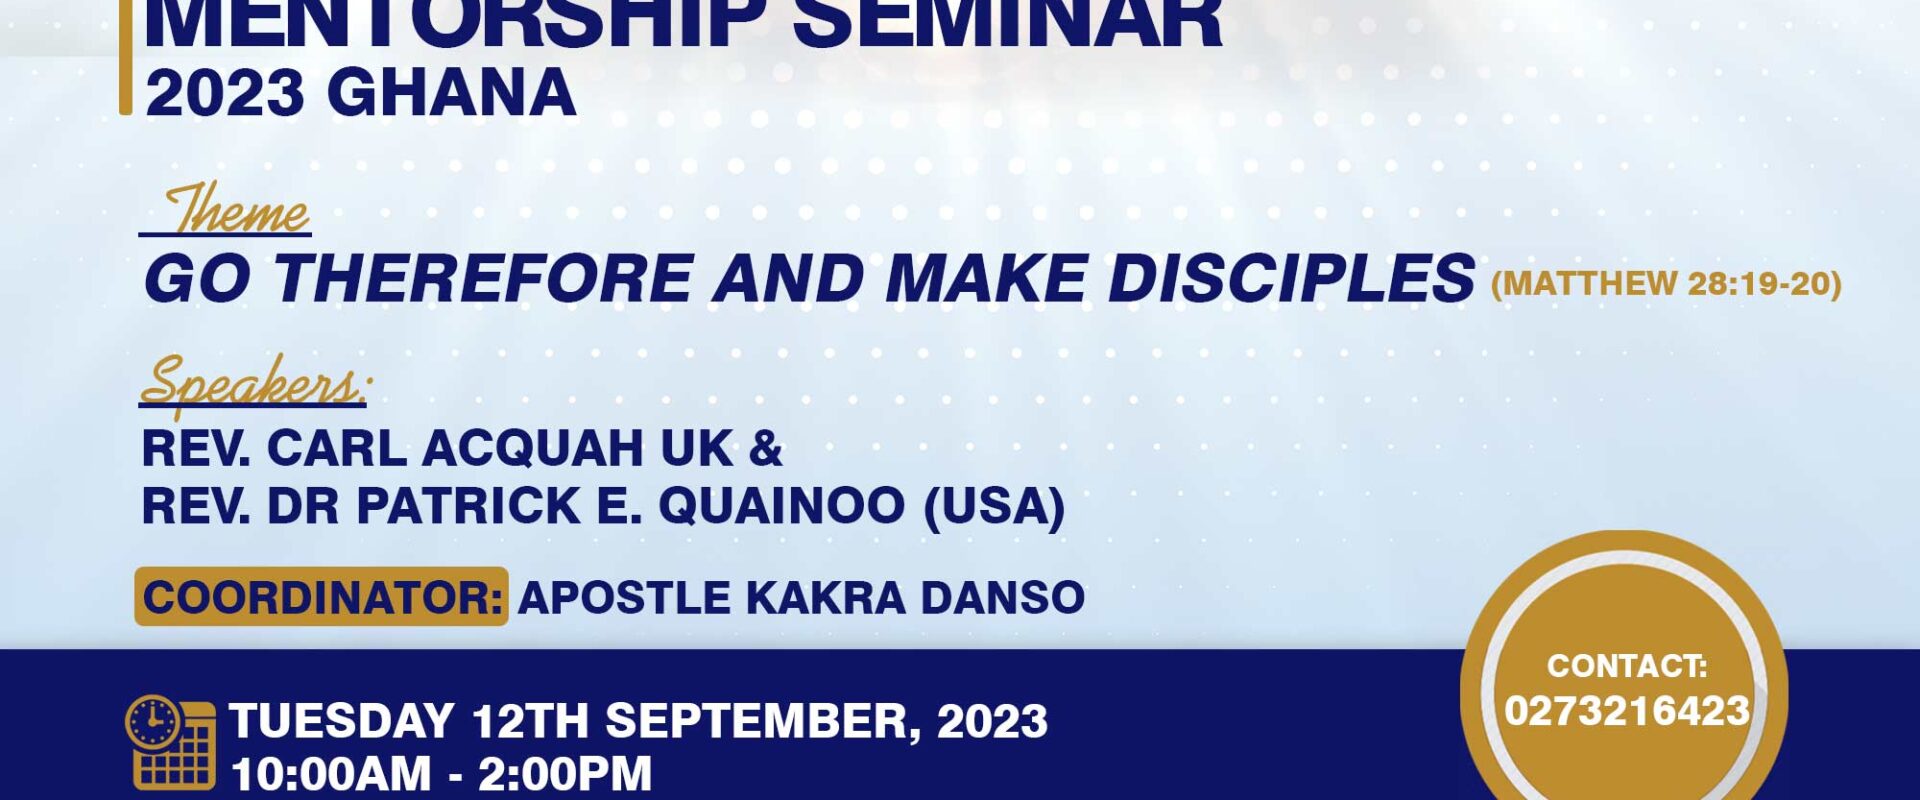 Pastors & Leadership Mentorship Seminar – 2023